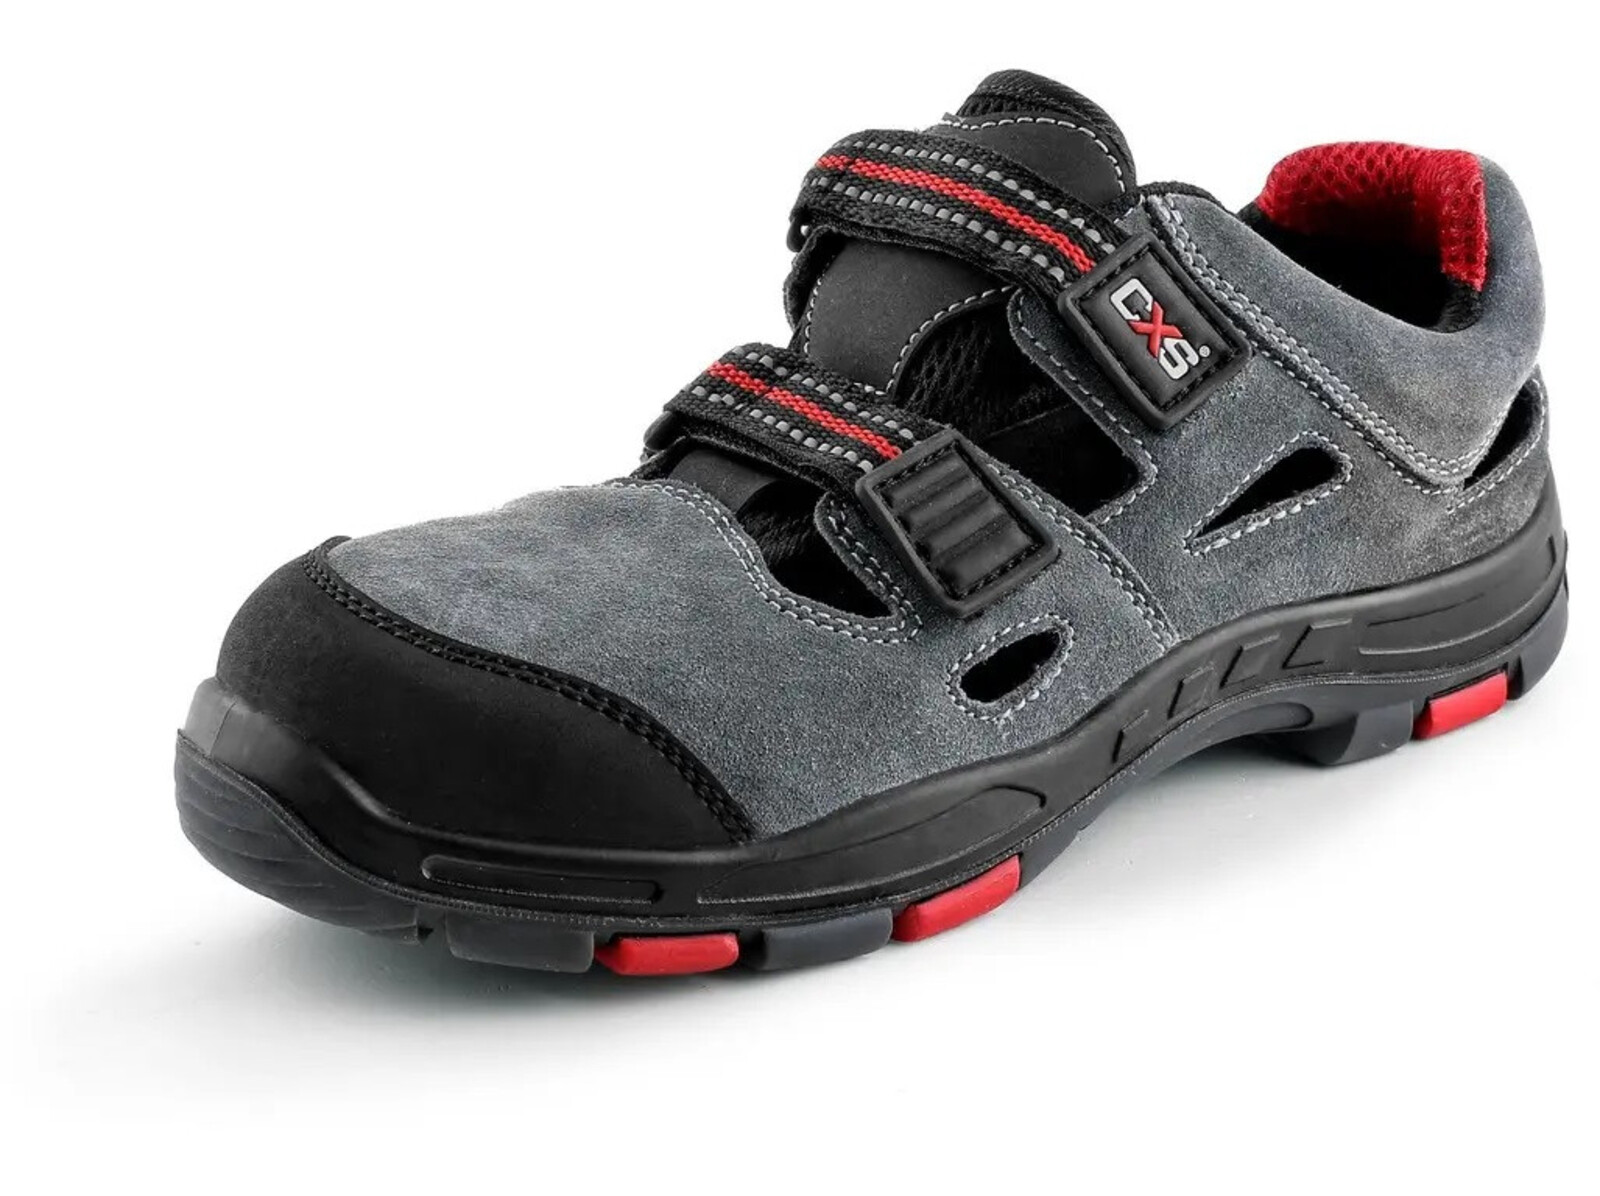 Pracovné sandále CXS Rock Phyllite O1 FO HRO SRA MF - veľkosť: 46, farba: sivá/červená